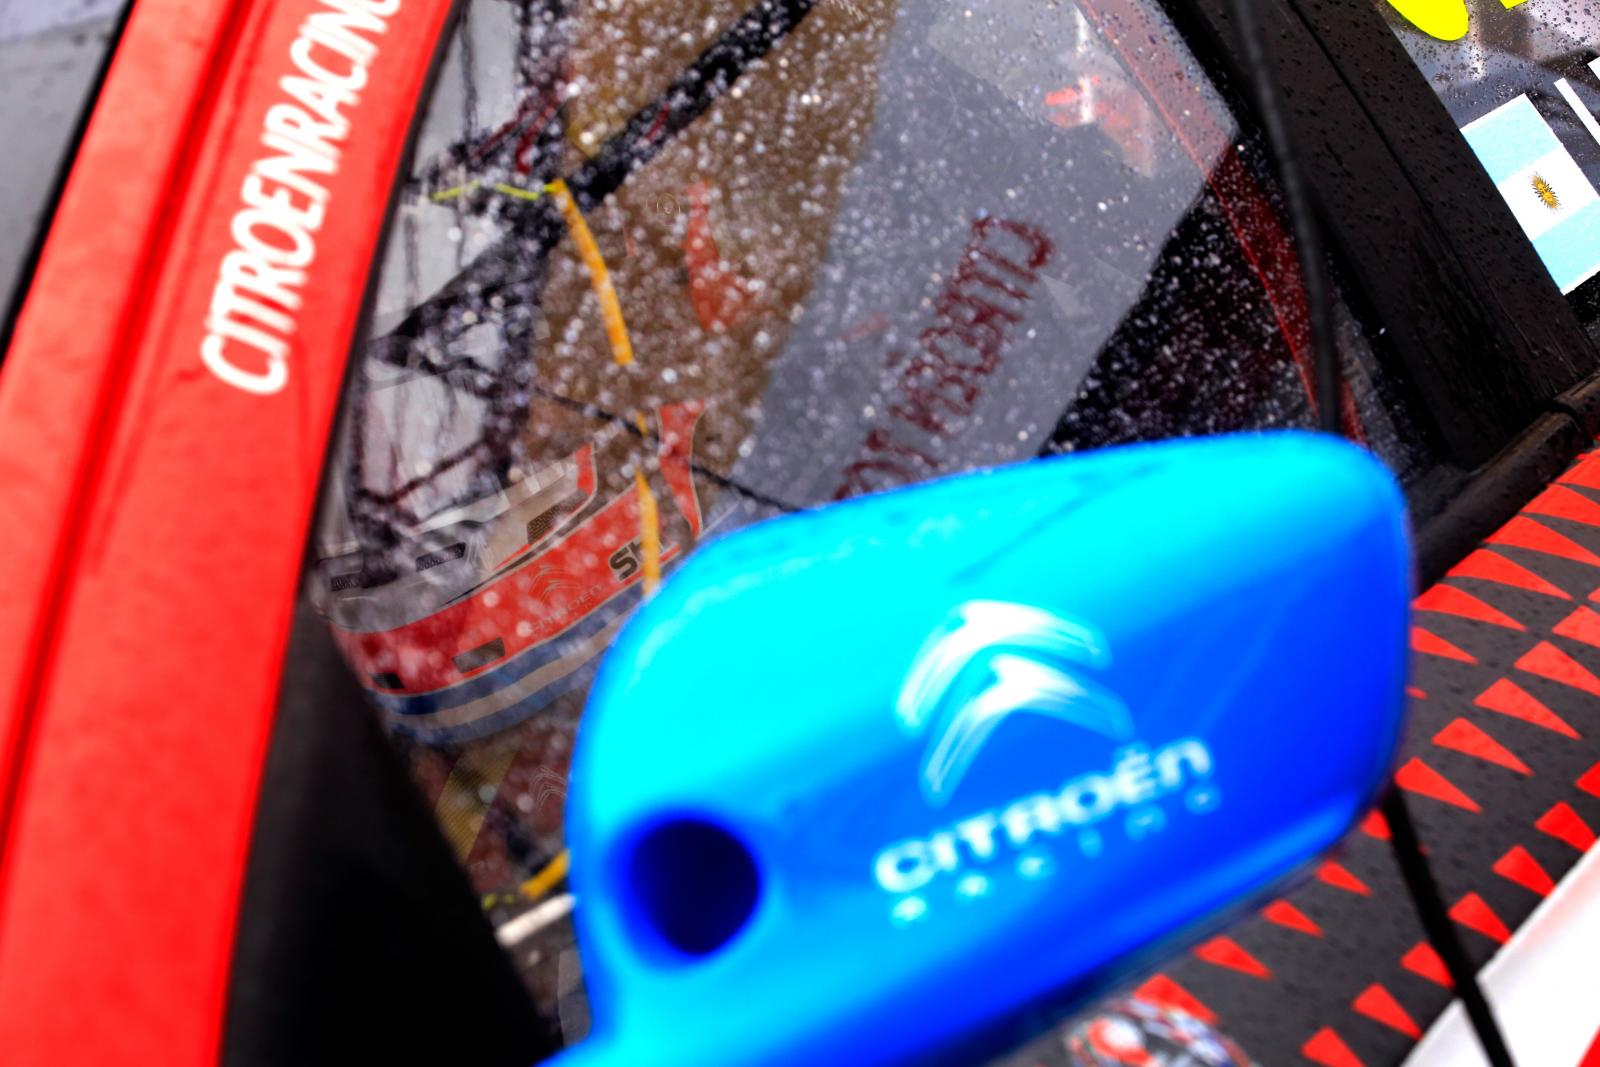 C-Elysée WTCC 2016 wing mirror